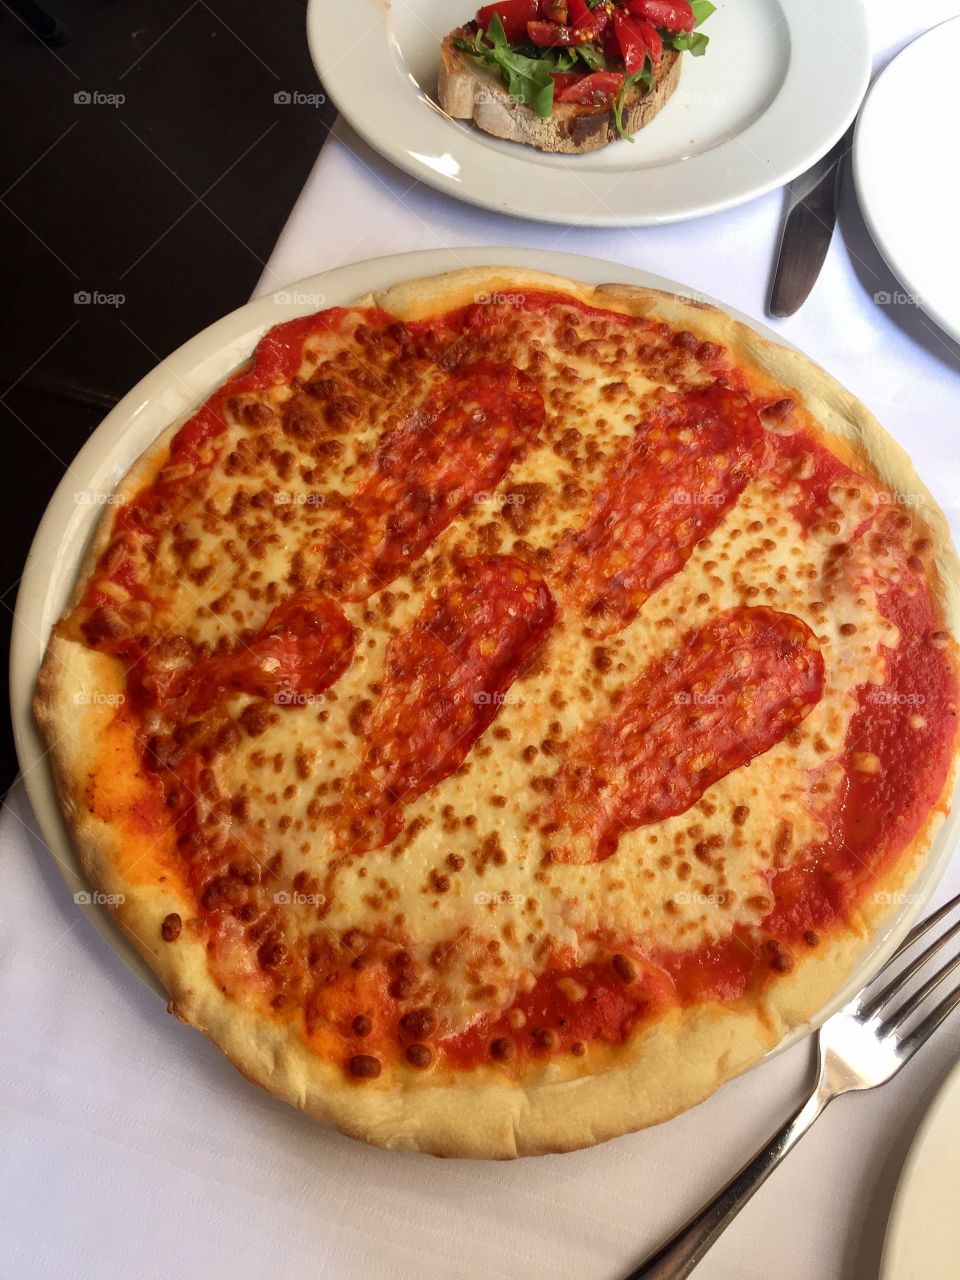 Rome pizza 